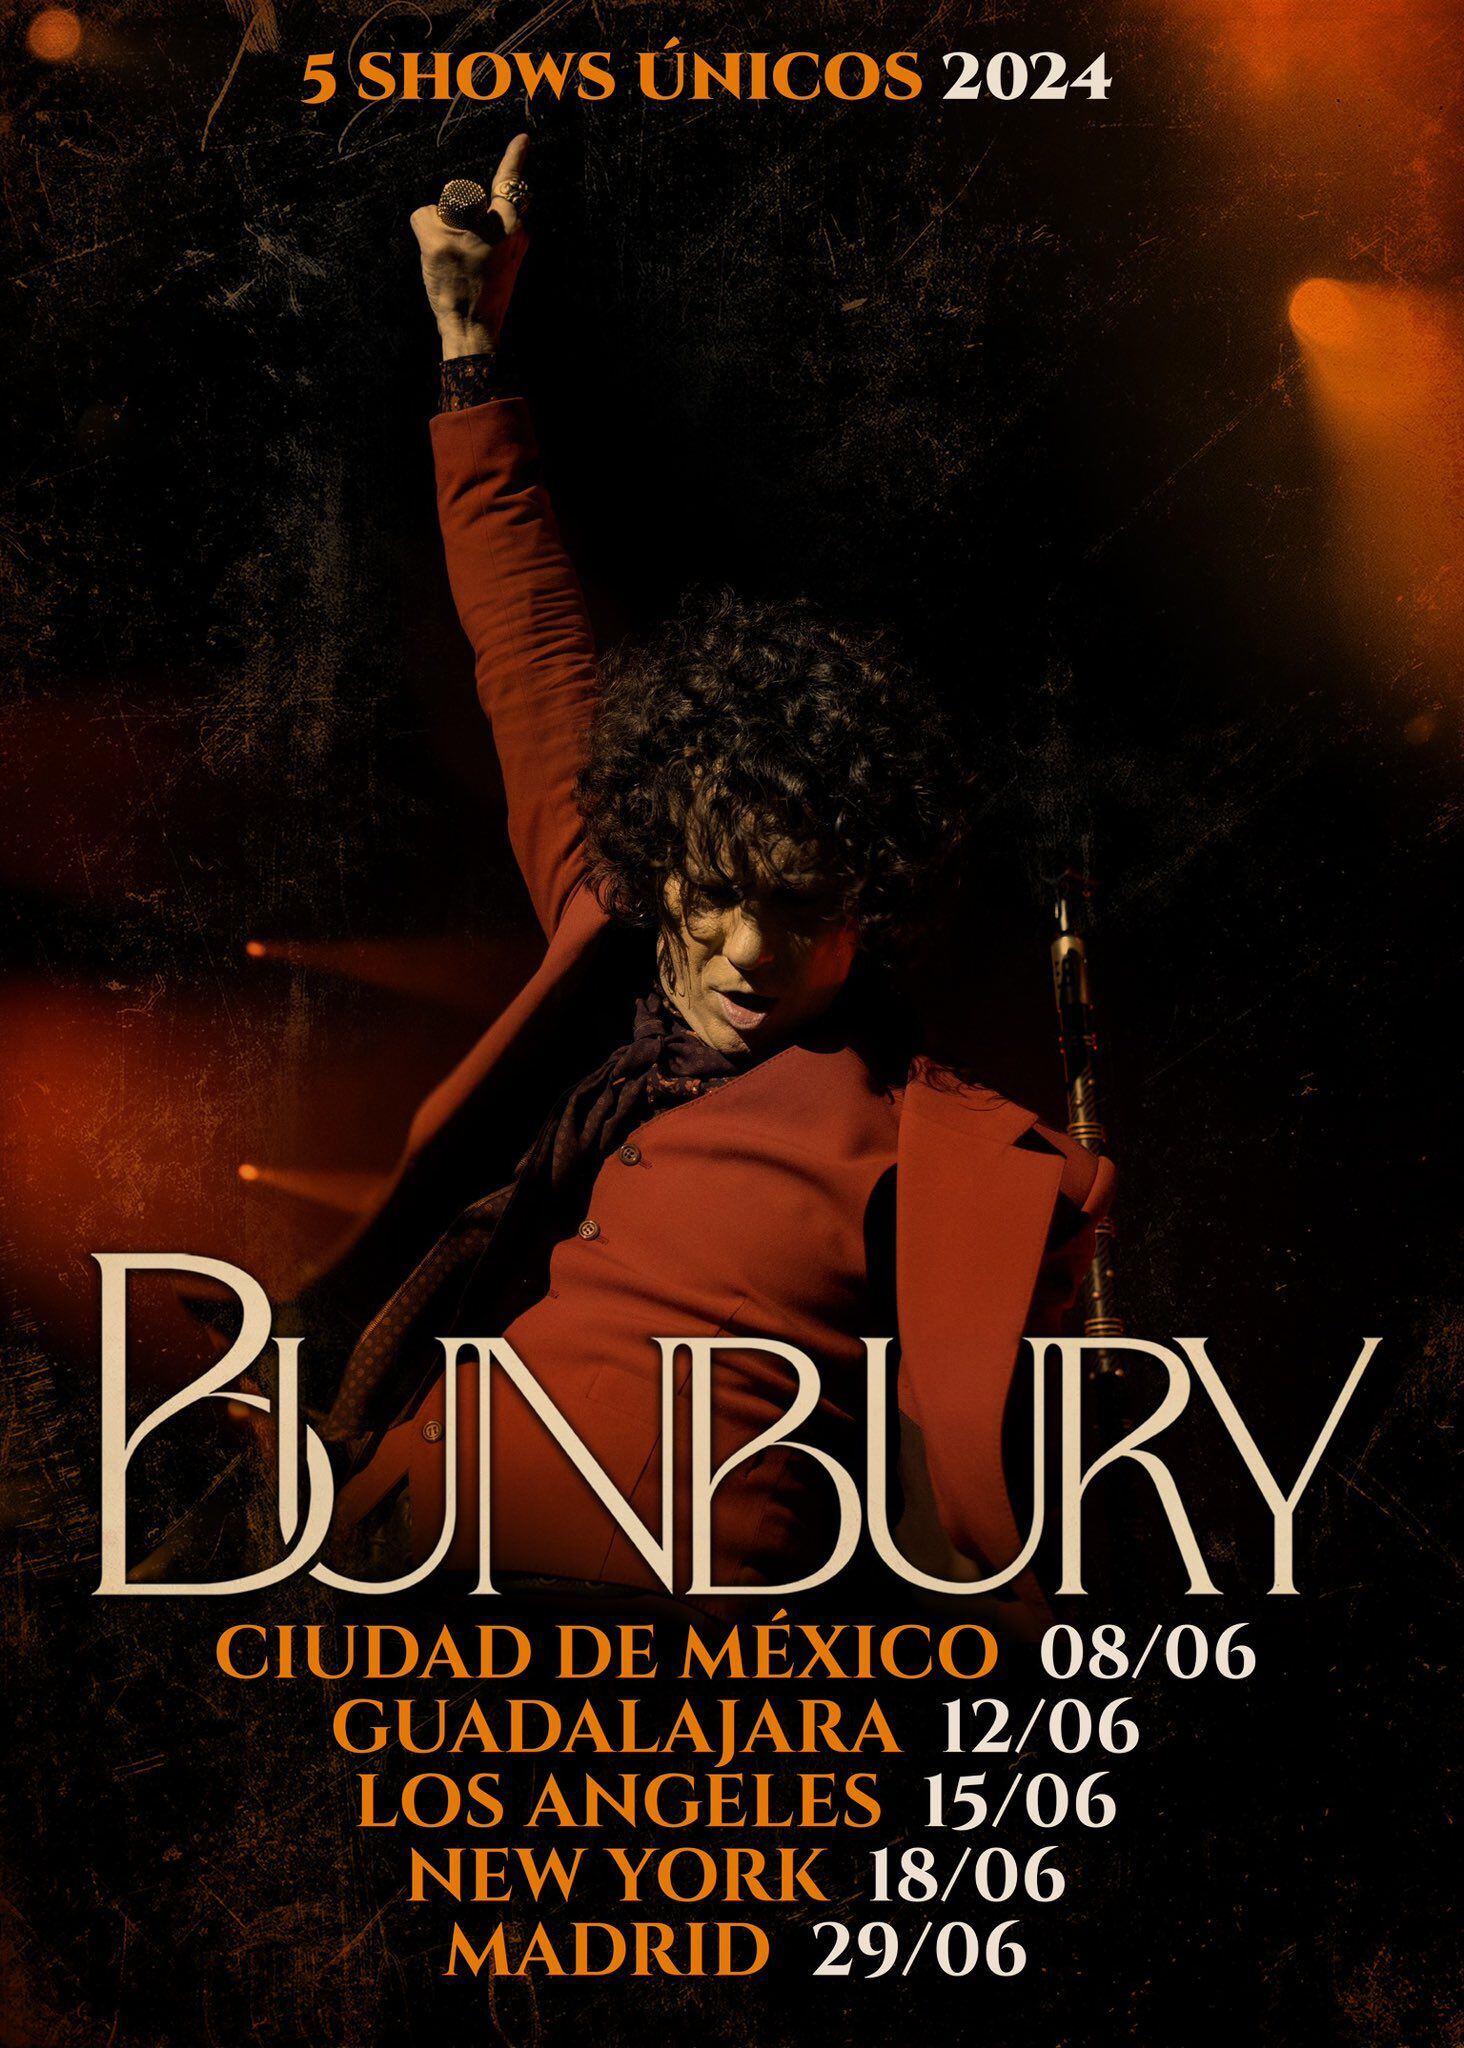 Enrique Bunbury en concierto: Precio de boletos para su regreso en CDMX y Guadalajara